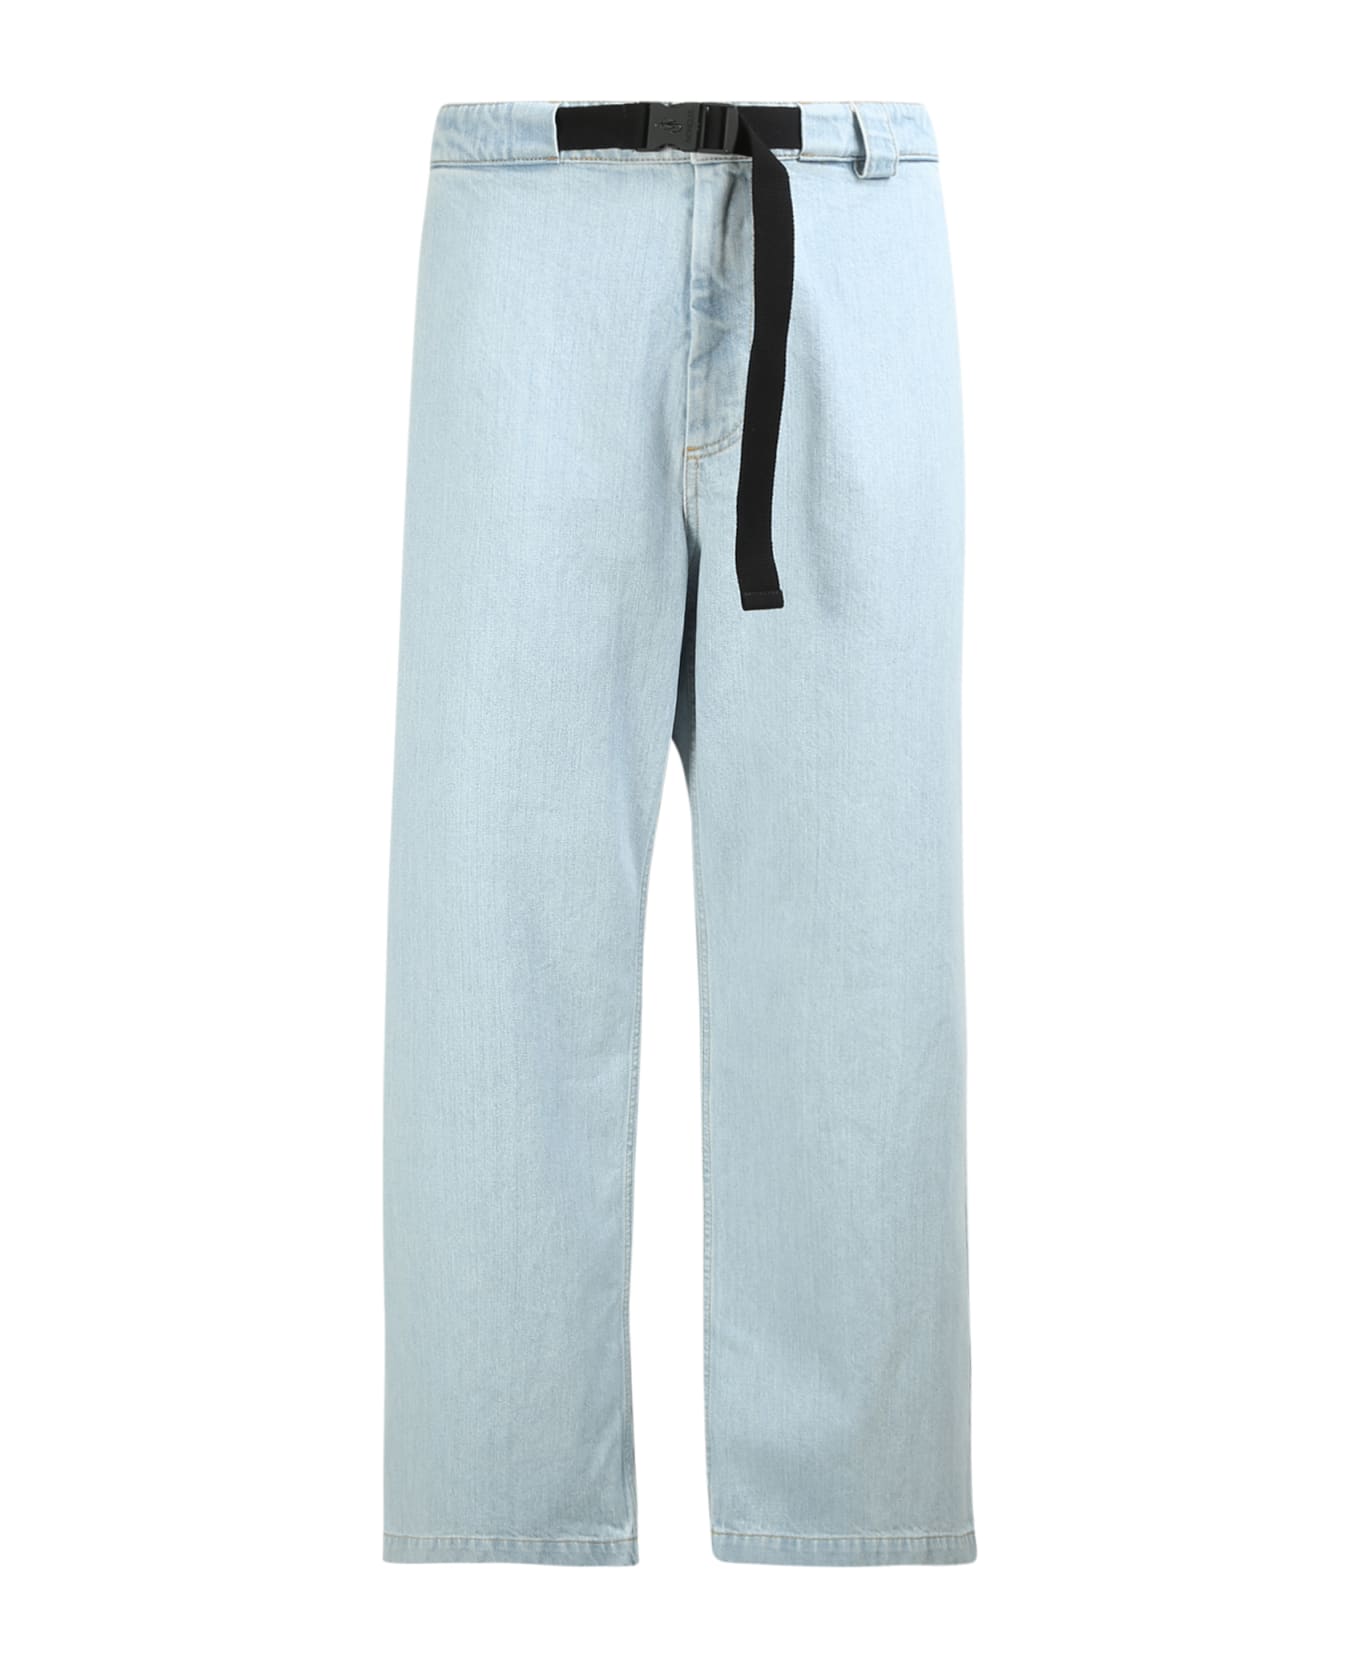 Moncler Genius Bleached Jeans - Moncler Jw Anderson - Blue